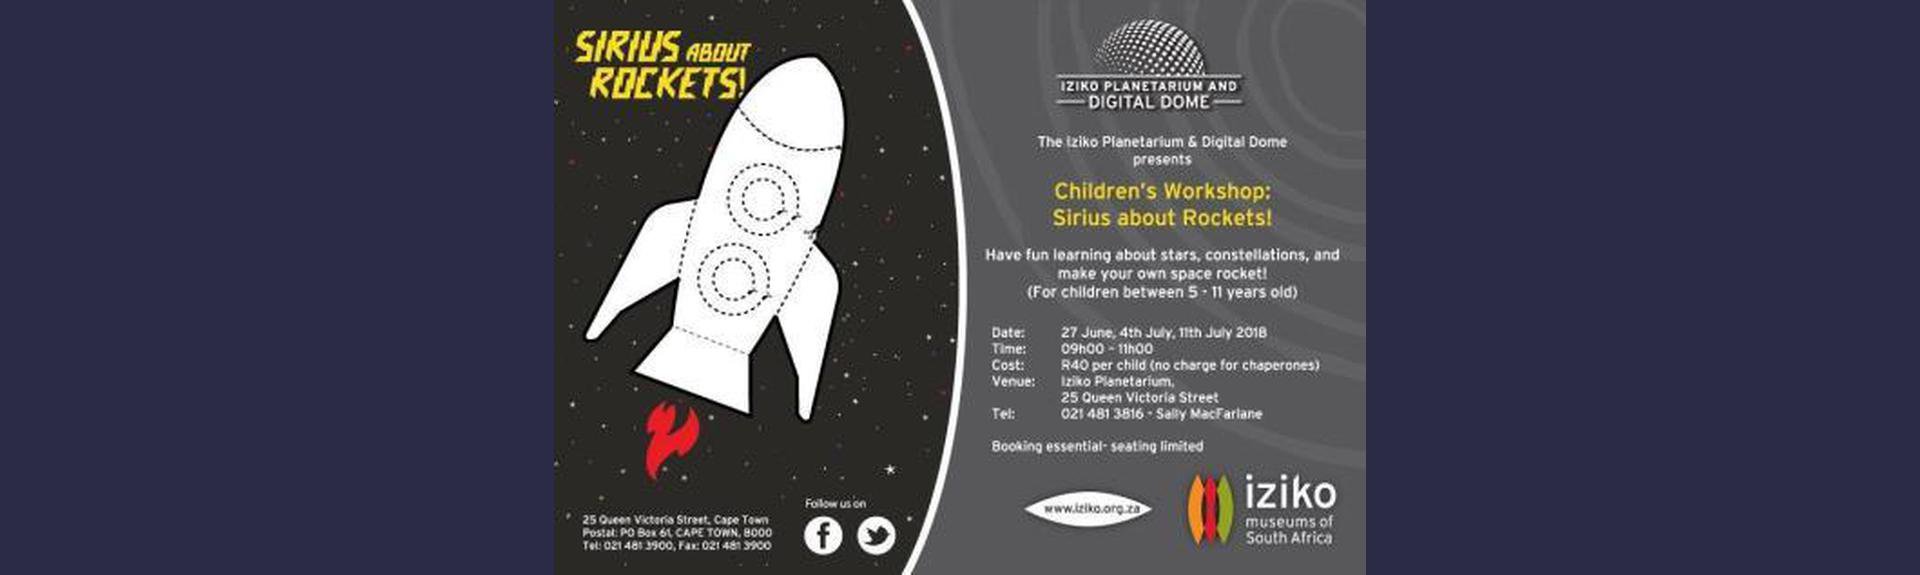 Children’s Workshop Planetarium - Sirius about Rockets!